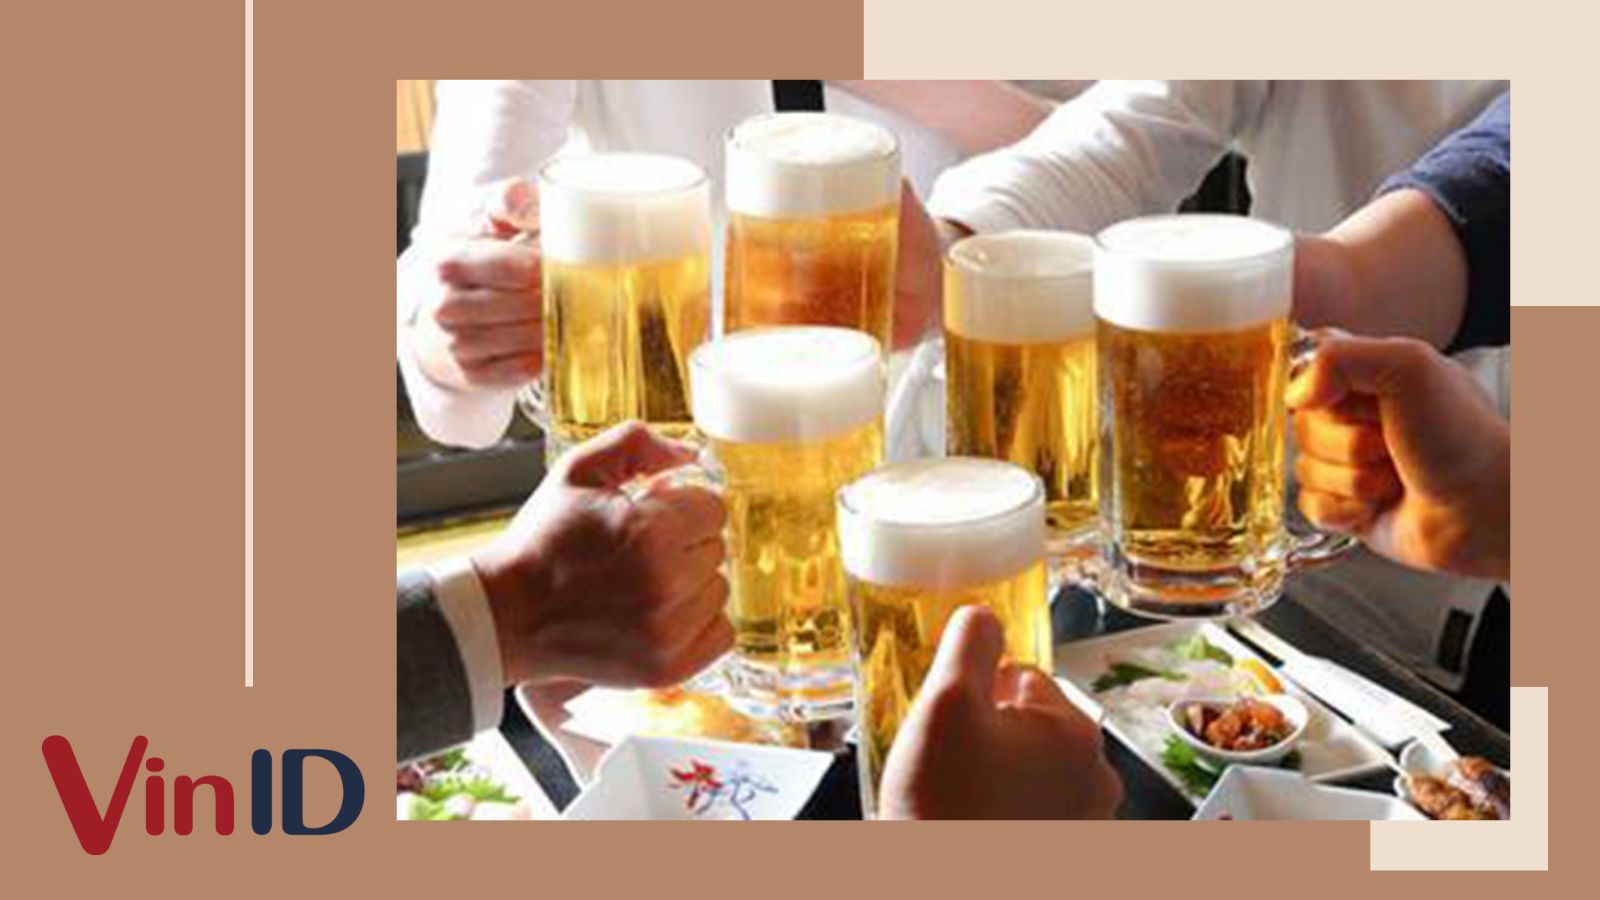 Lượng calo và chất dinh dưỡng có trong một lon bia thường là bao nhiêu?
